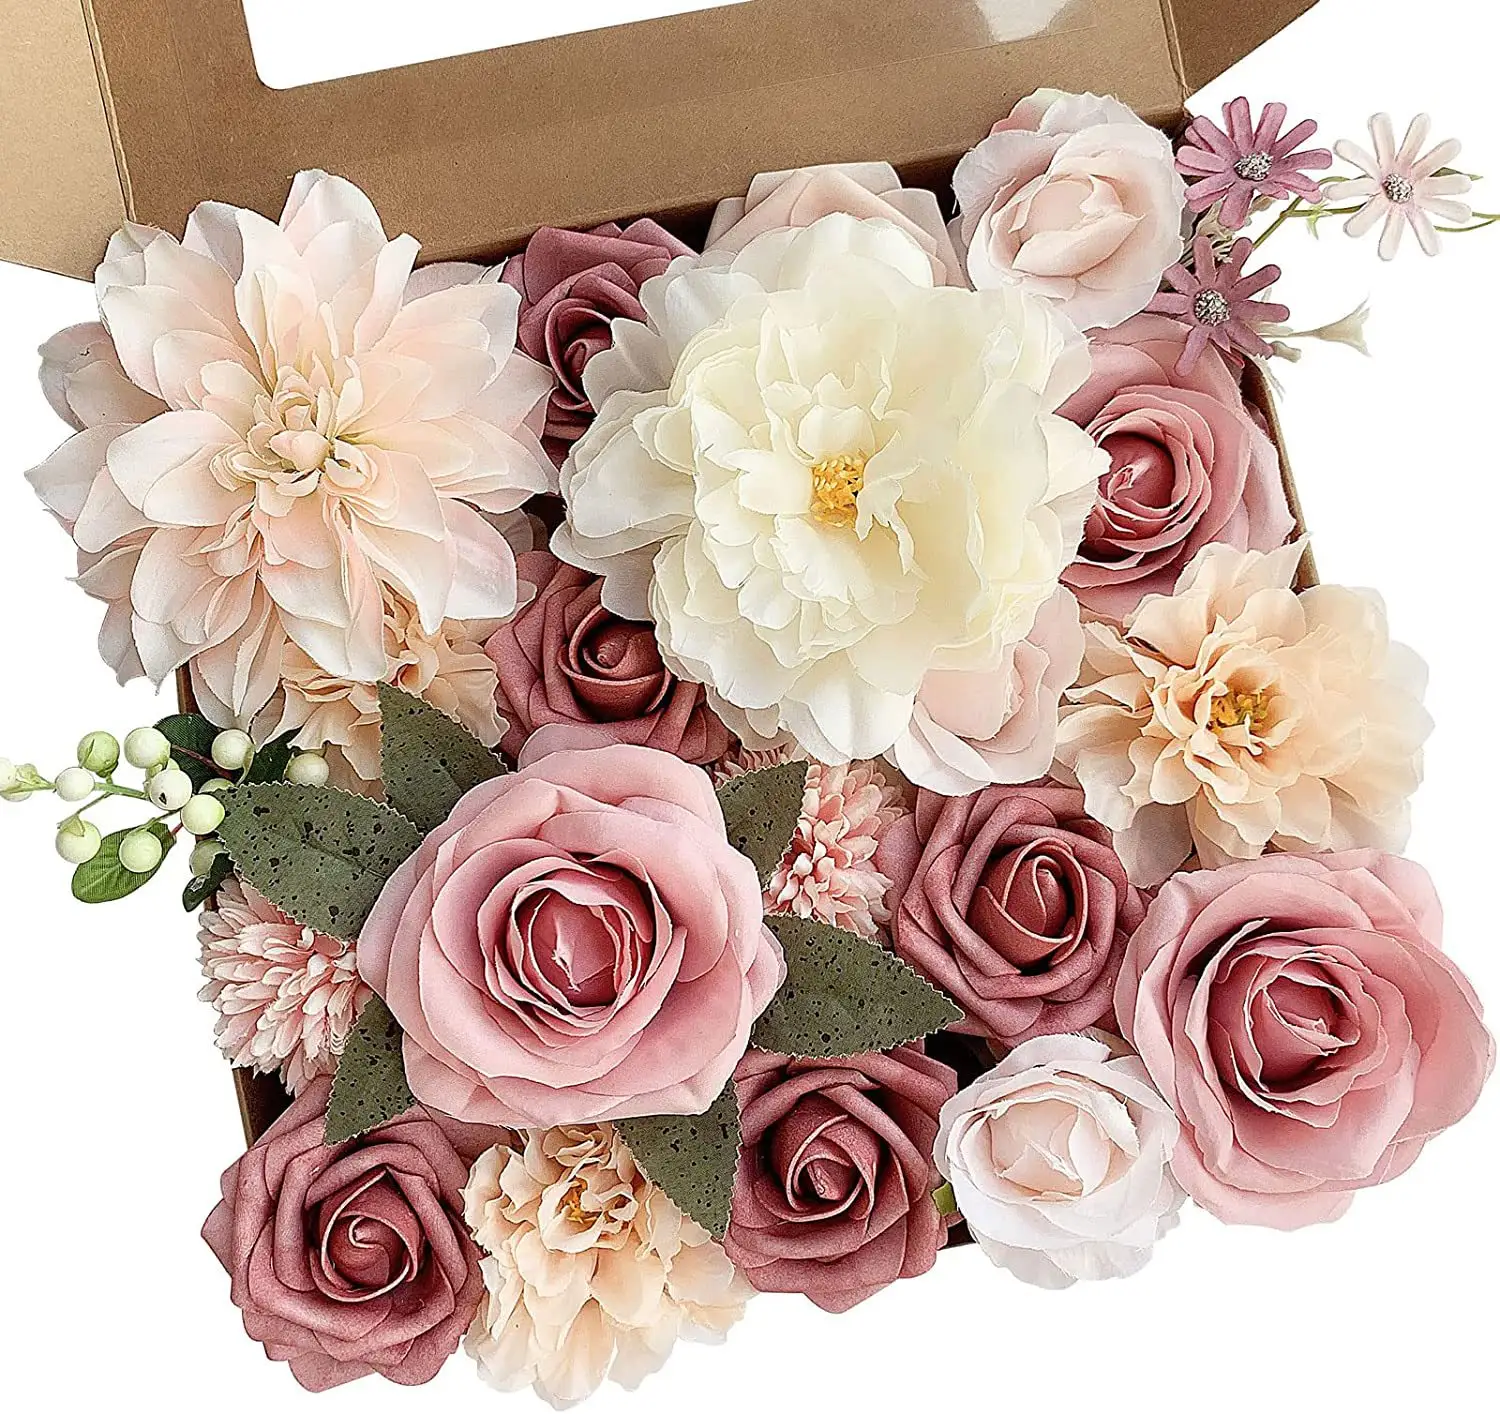 JOY Venta caliente Día de San Valentín Rosa Caja de regalo Rosas blancas de alta calidad para propuesta Fondo DE BODA Flores combinadas